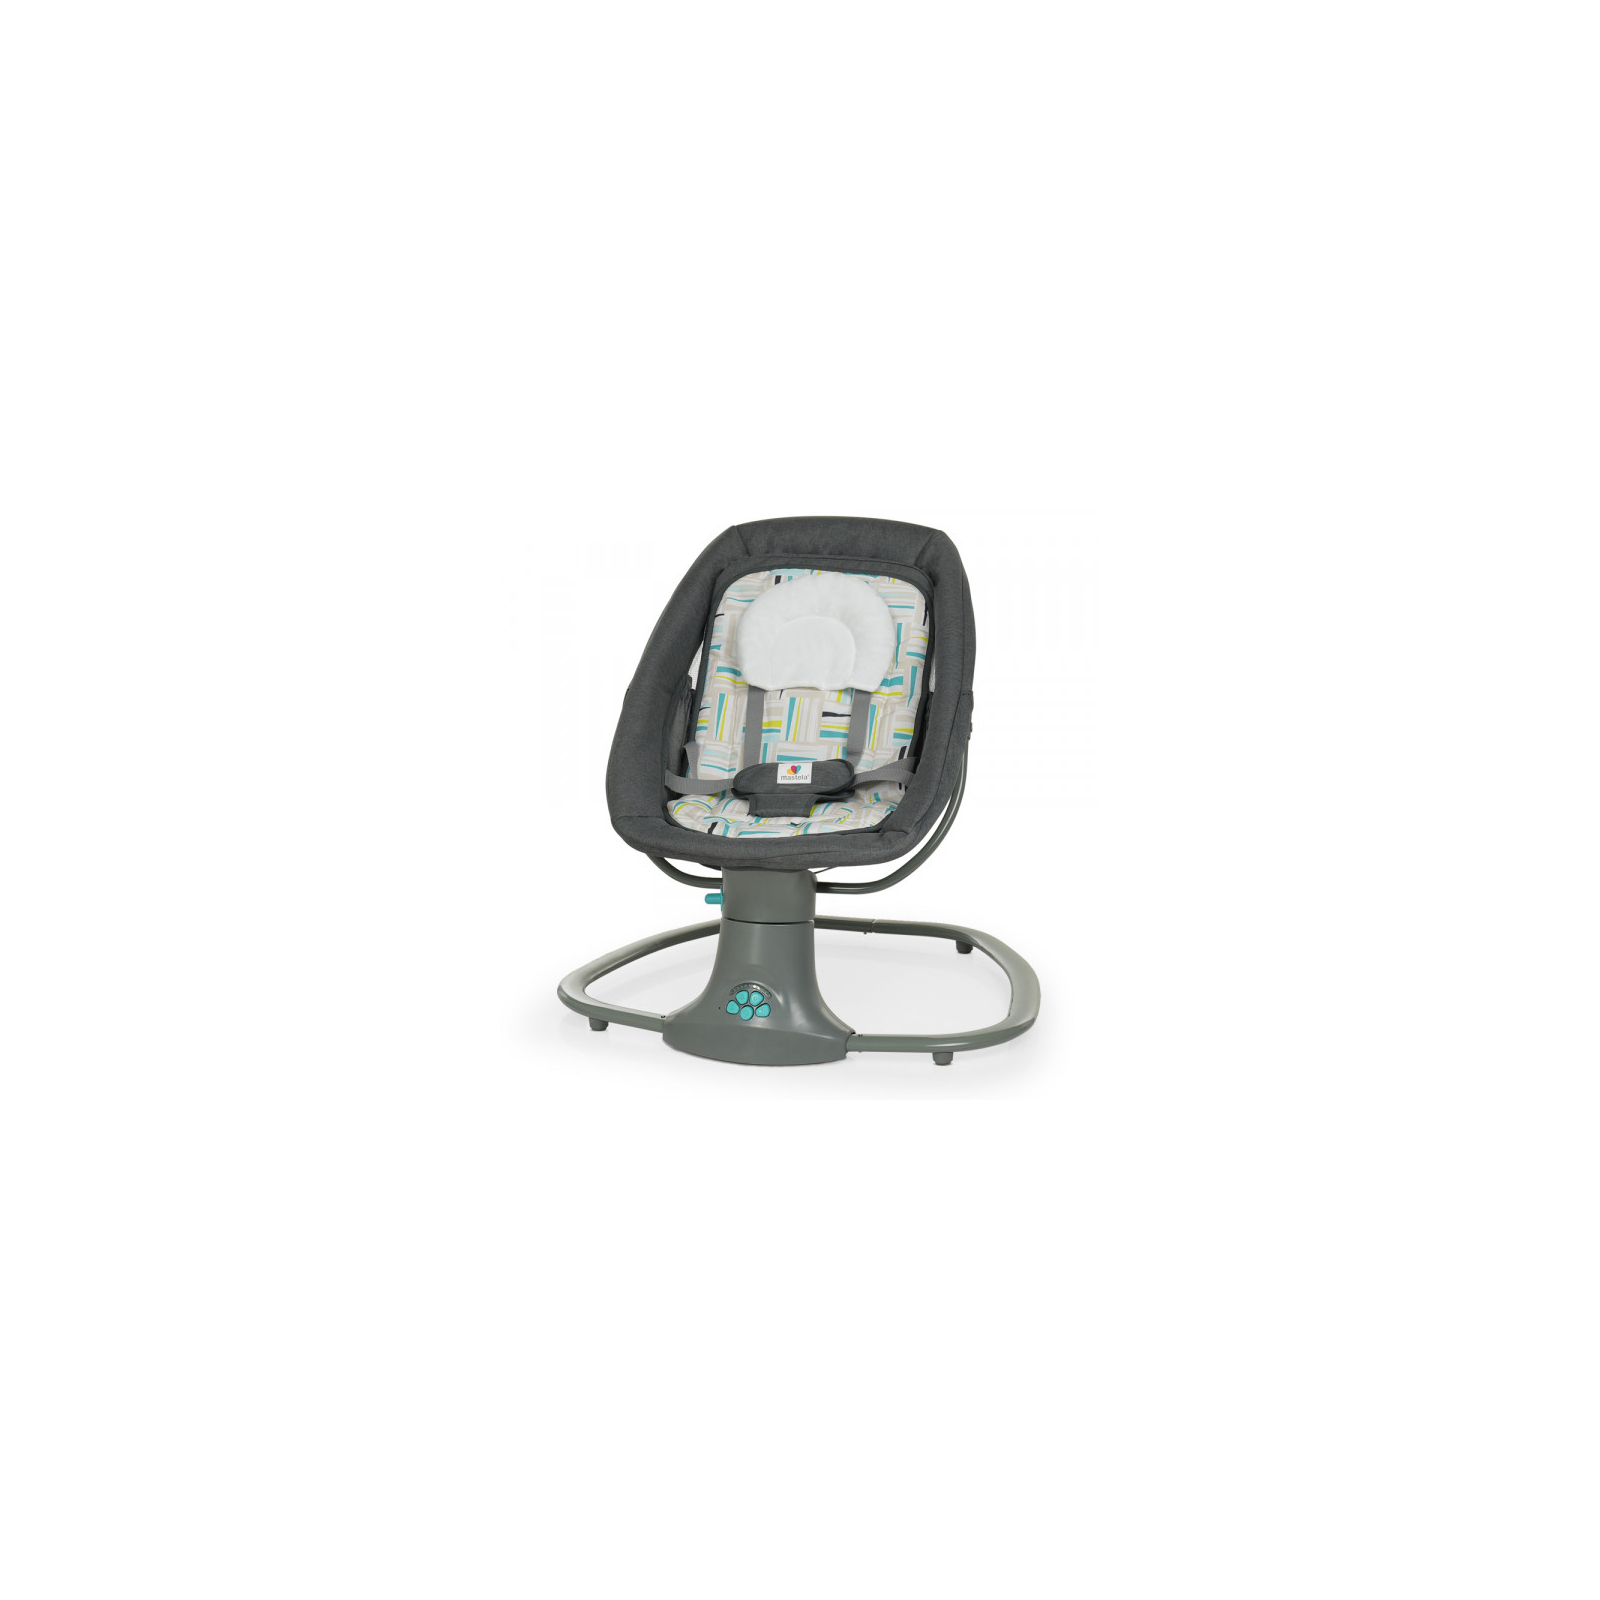 Кресло-качалка Mastela Укачивающий центр dark grey (Mastela 8105 dark grey) изображение 2